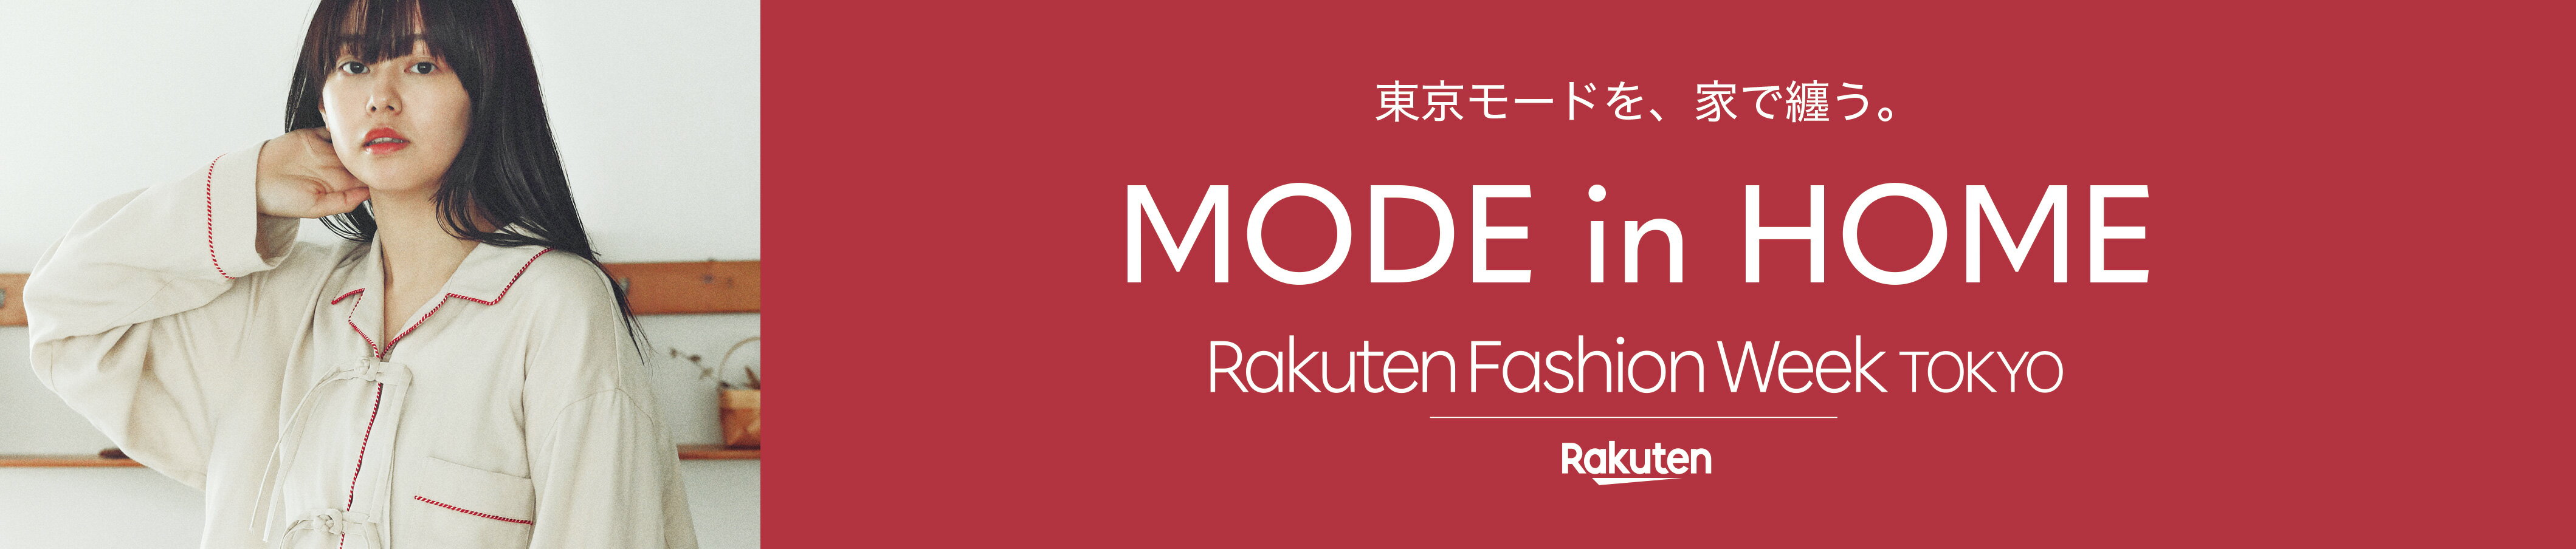 Rakuten Fashion Week Tokyo E-POP UP STORE